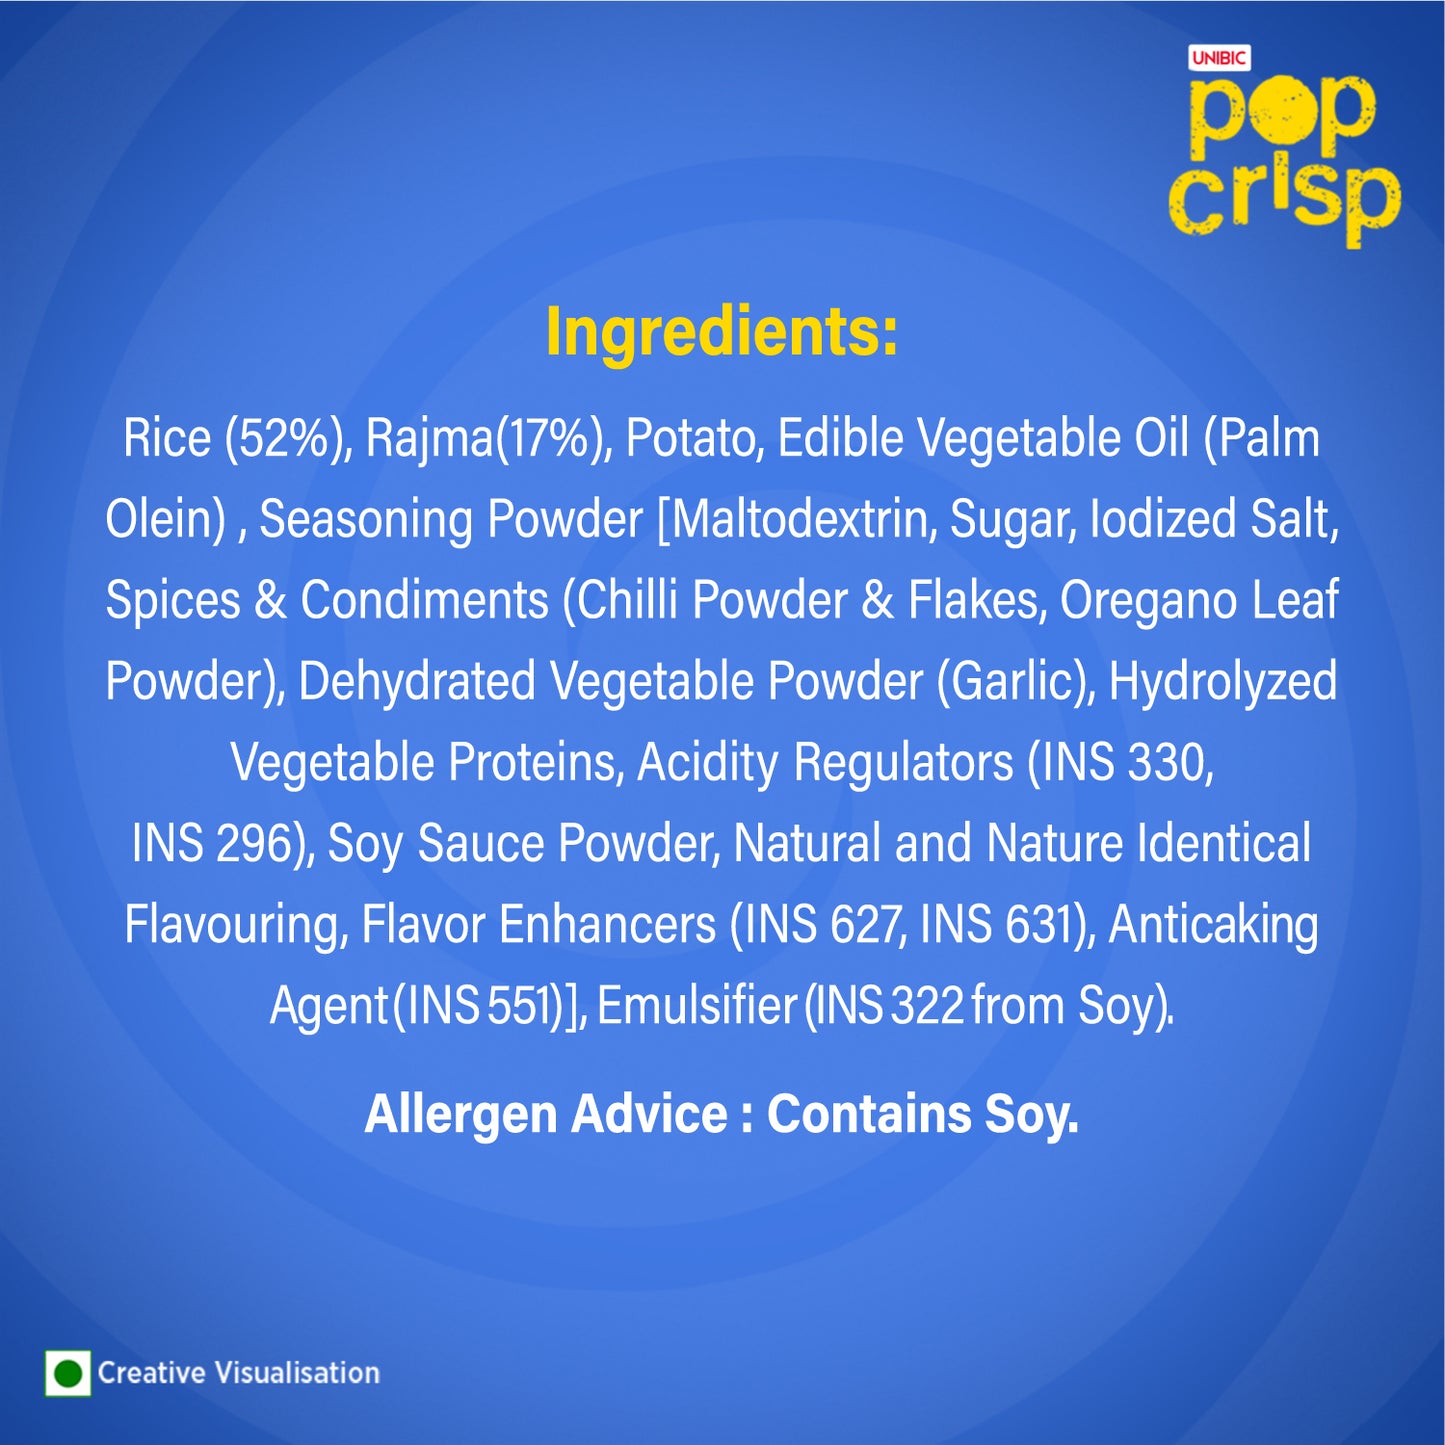 Unibic Rice & Bean Pop Crips (Herb) 16g